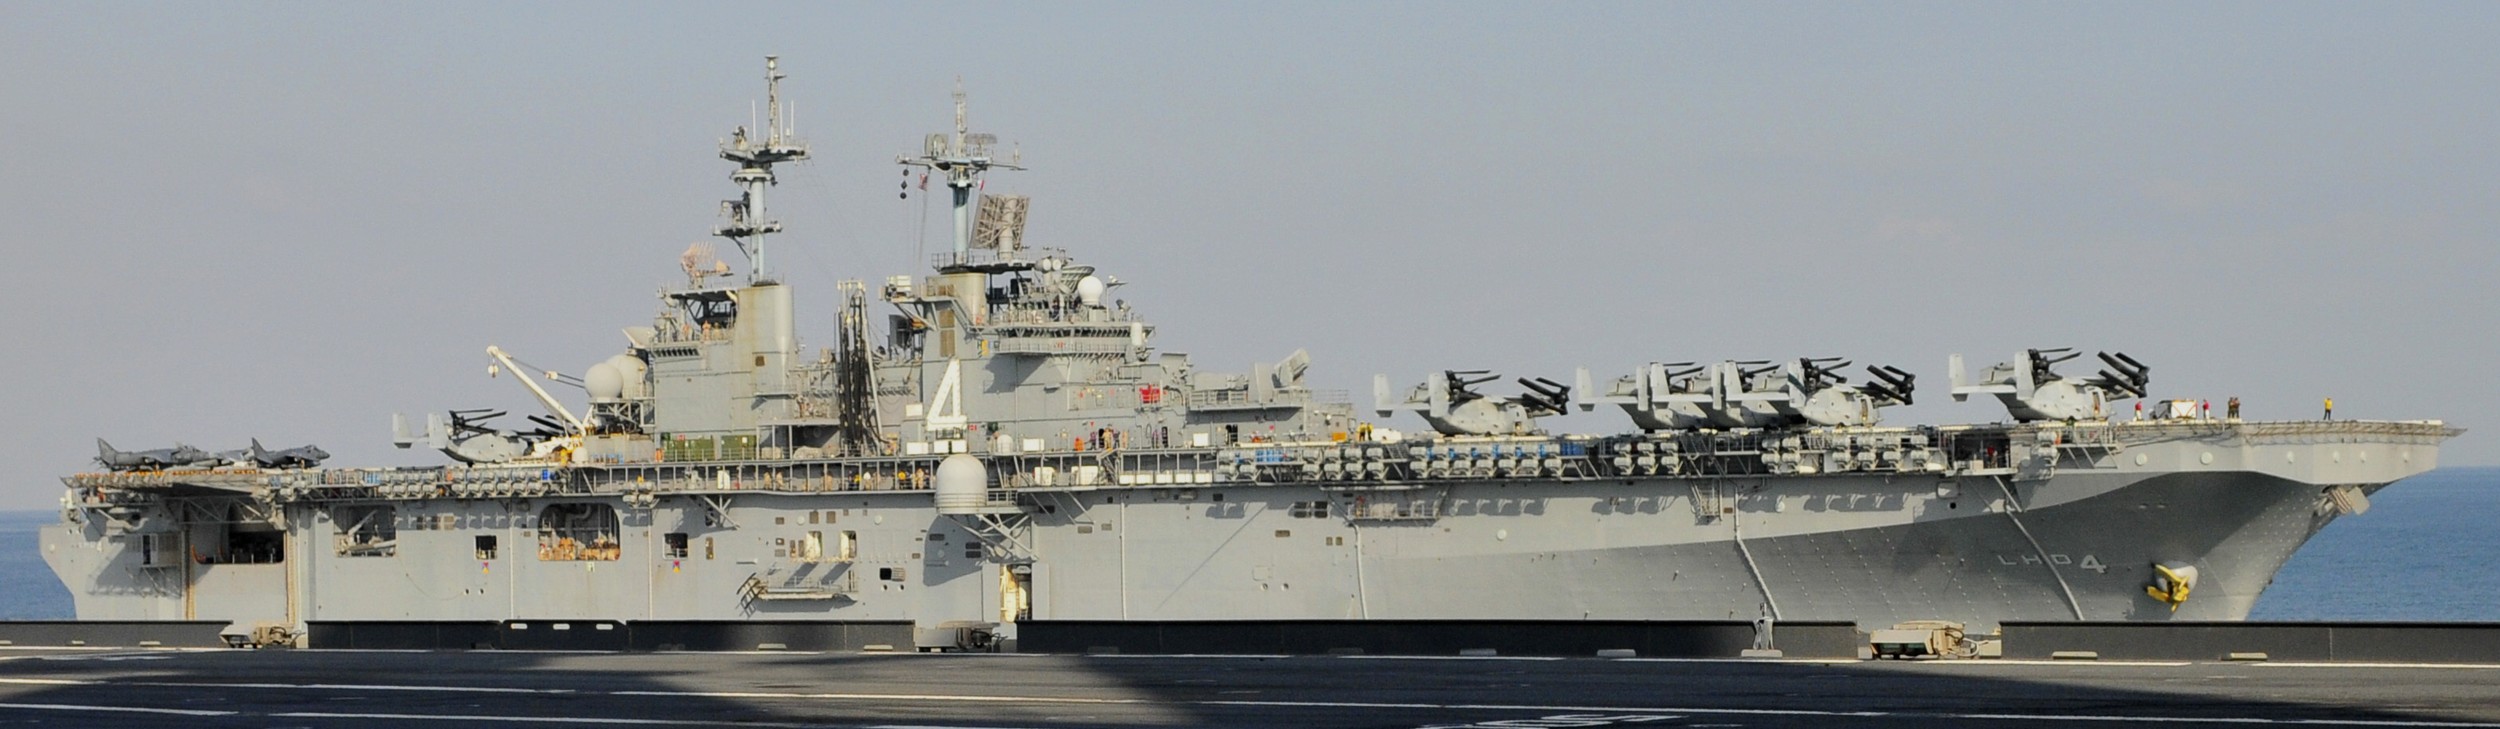 lhd-4 uss boxer wasp class amphibious assault ship dock landing us navy marines vmm-166 arabian gulf 89